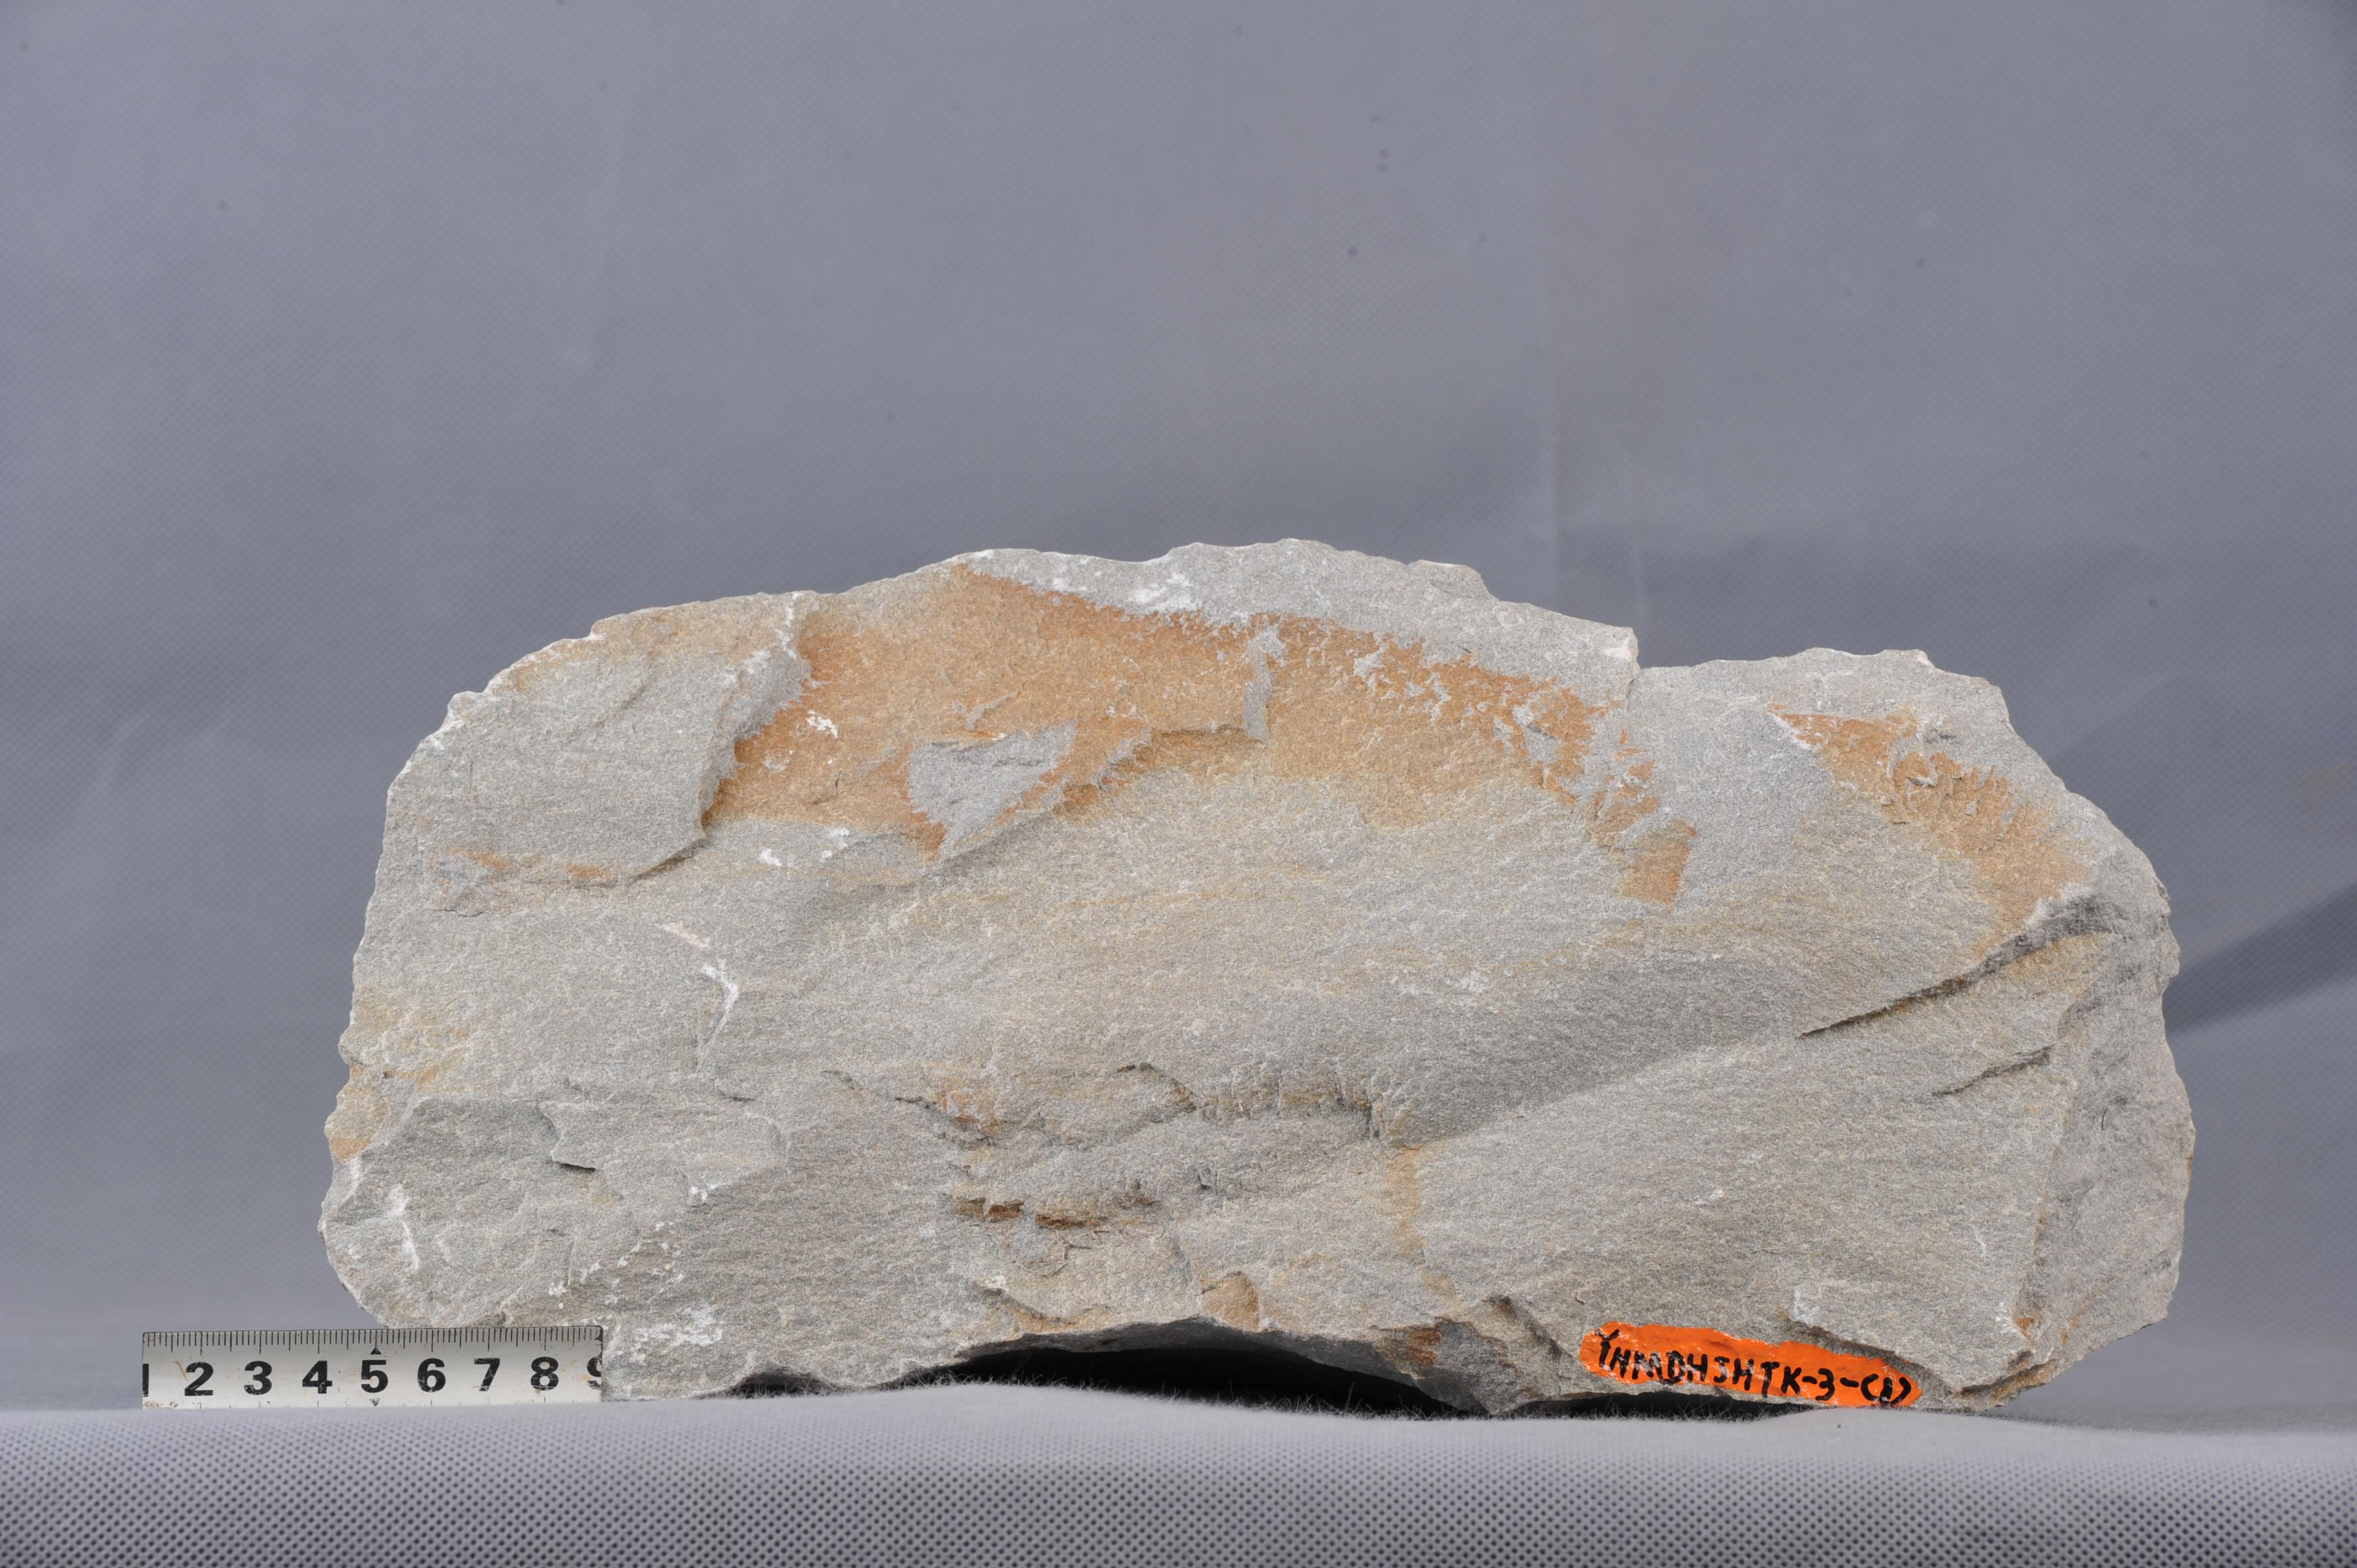 浅色中一细粒长石石英砂岩,成分要为石英,长石,粒度较均匀,岩石